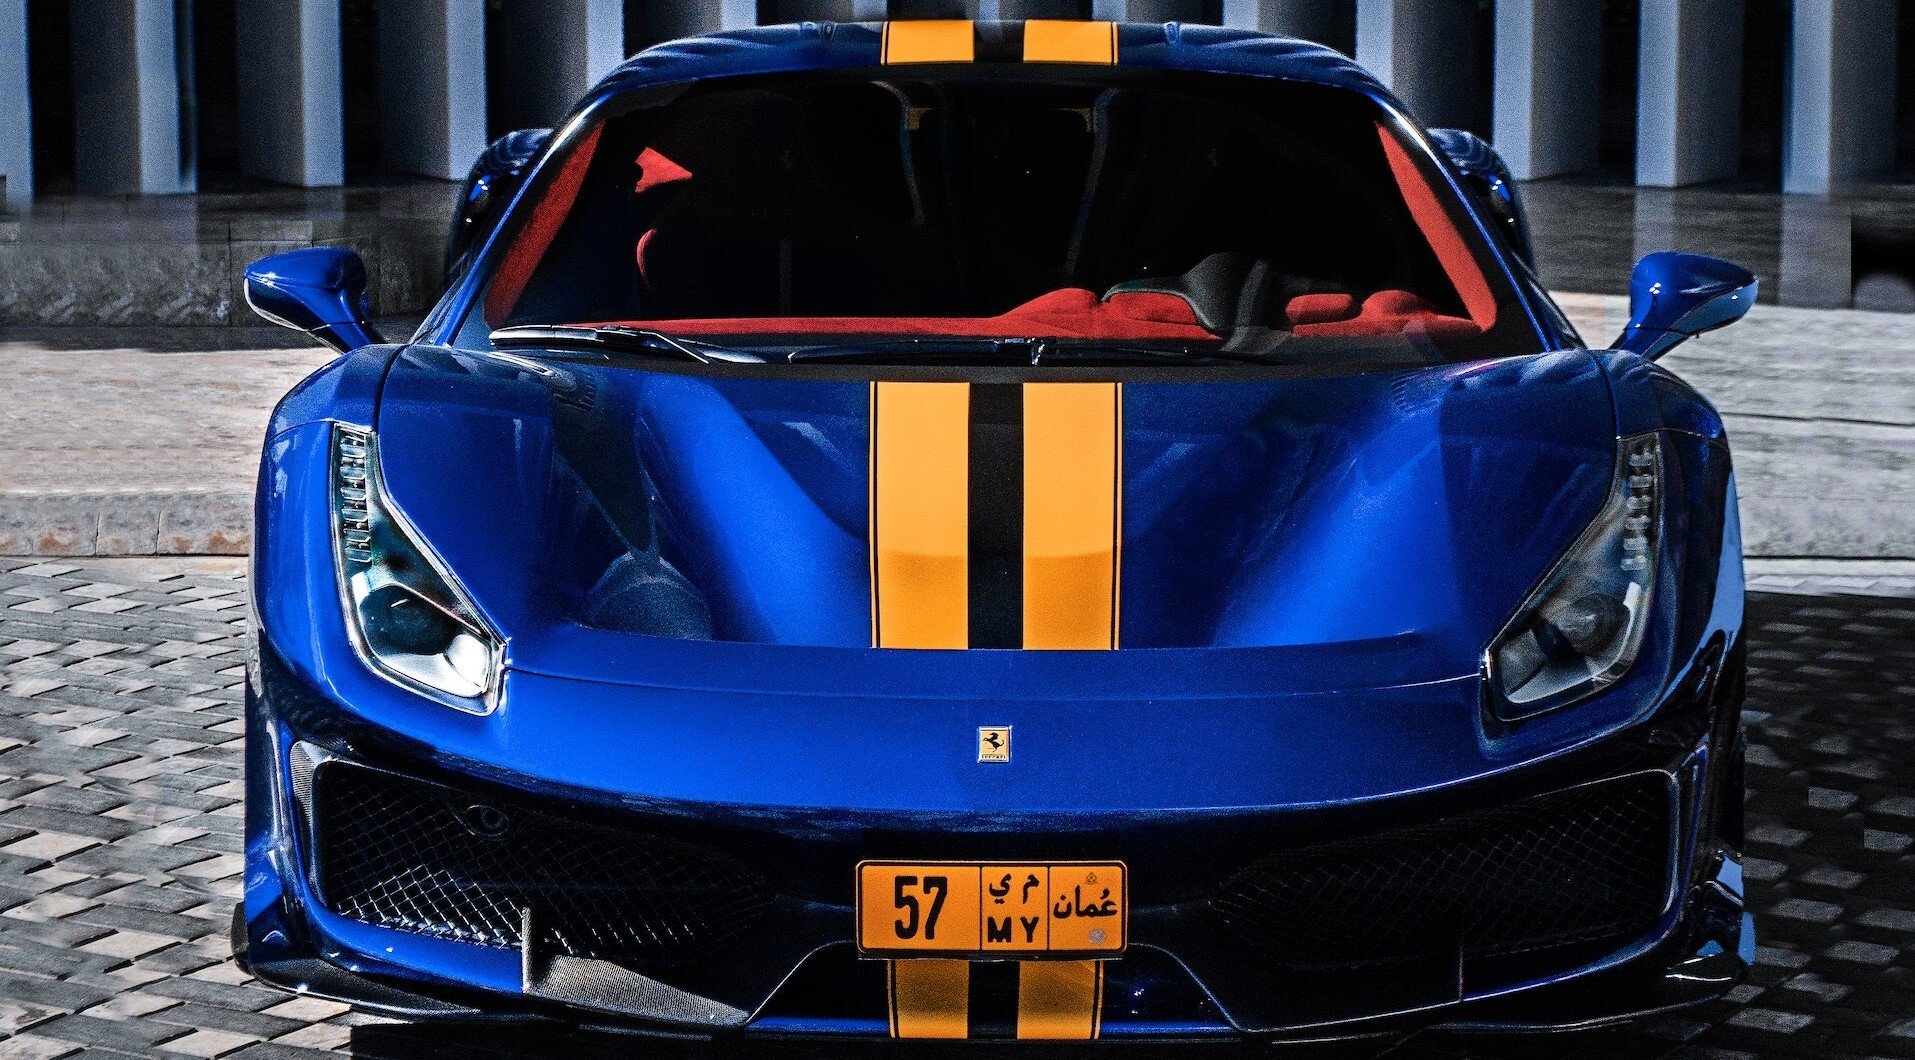 Ferrari  vlani predalo rekordný počet nových áut. Zisk automobilky dosiahol 939 miliónov eur